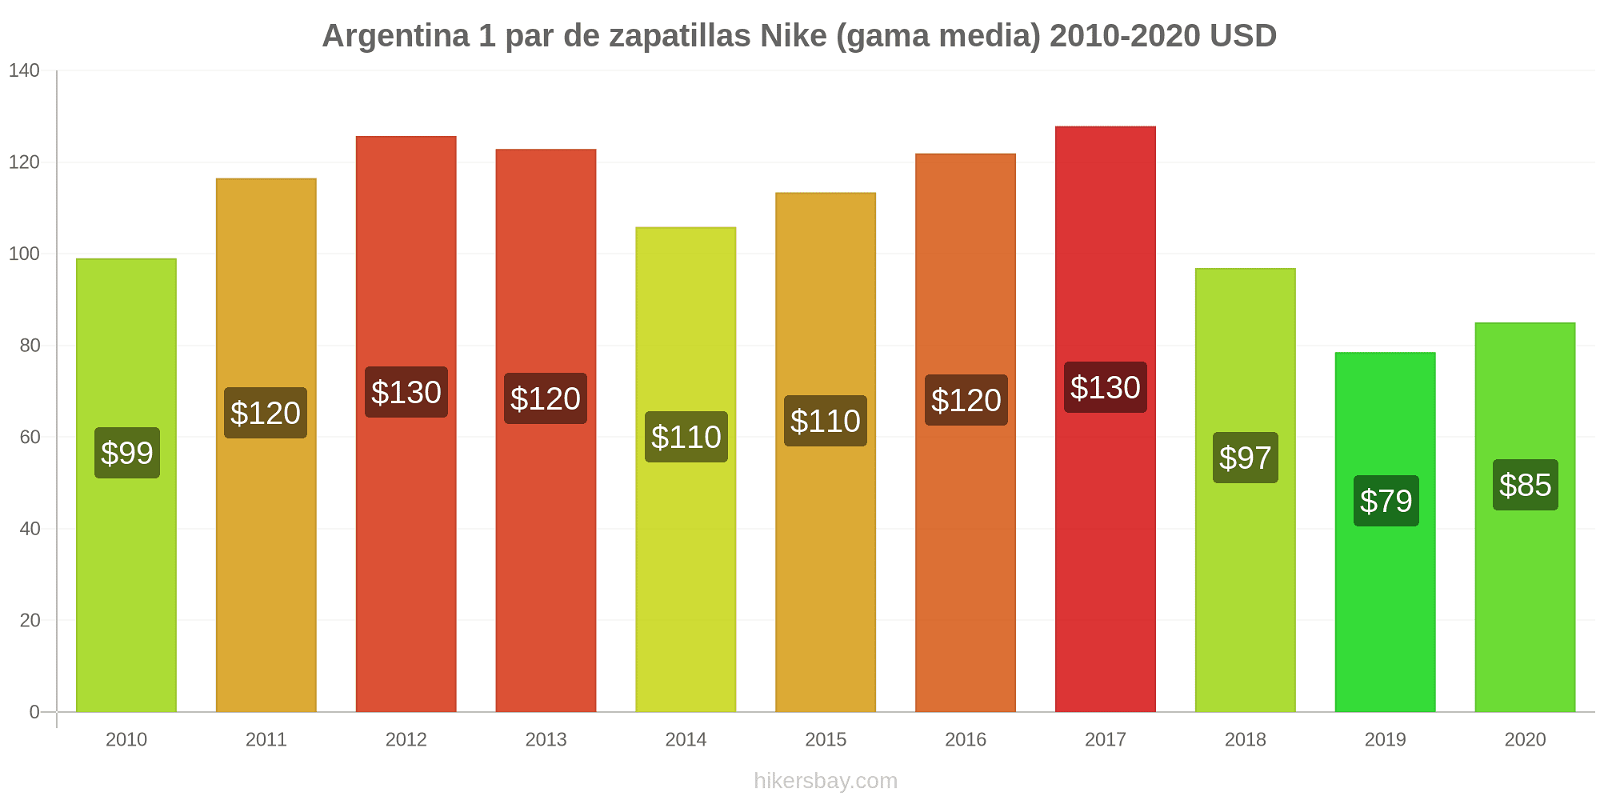 Argentina cambios de precios 1 par de zapatillas Nike (gama media) hikersbay.com